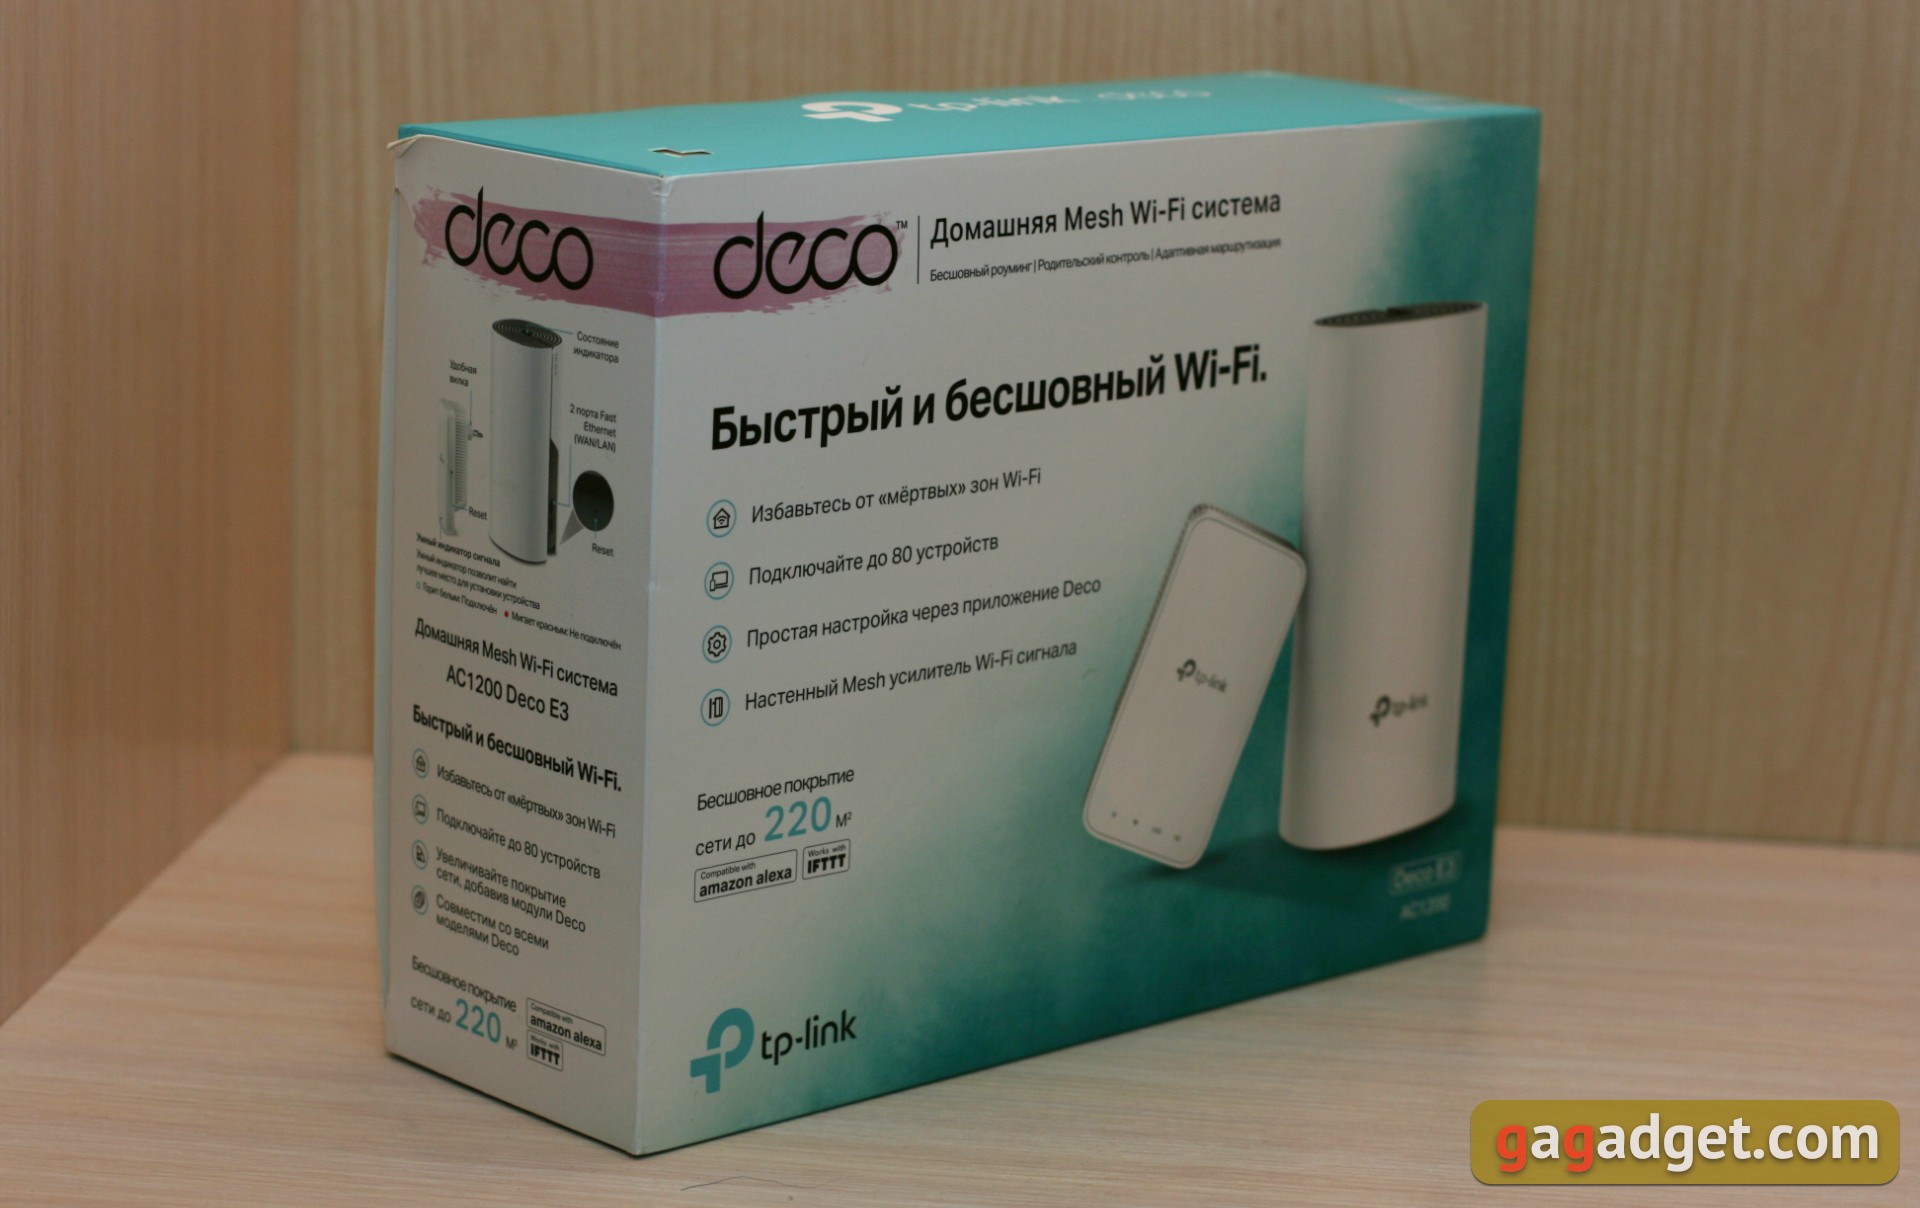 Przegląd TP-Link Deco E3: najprostszy sposobób poprawić swój Wi-Fi w domu-2